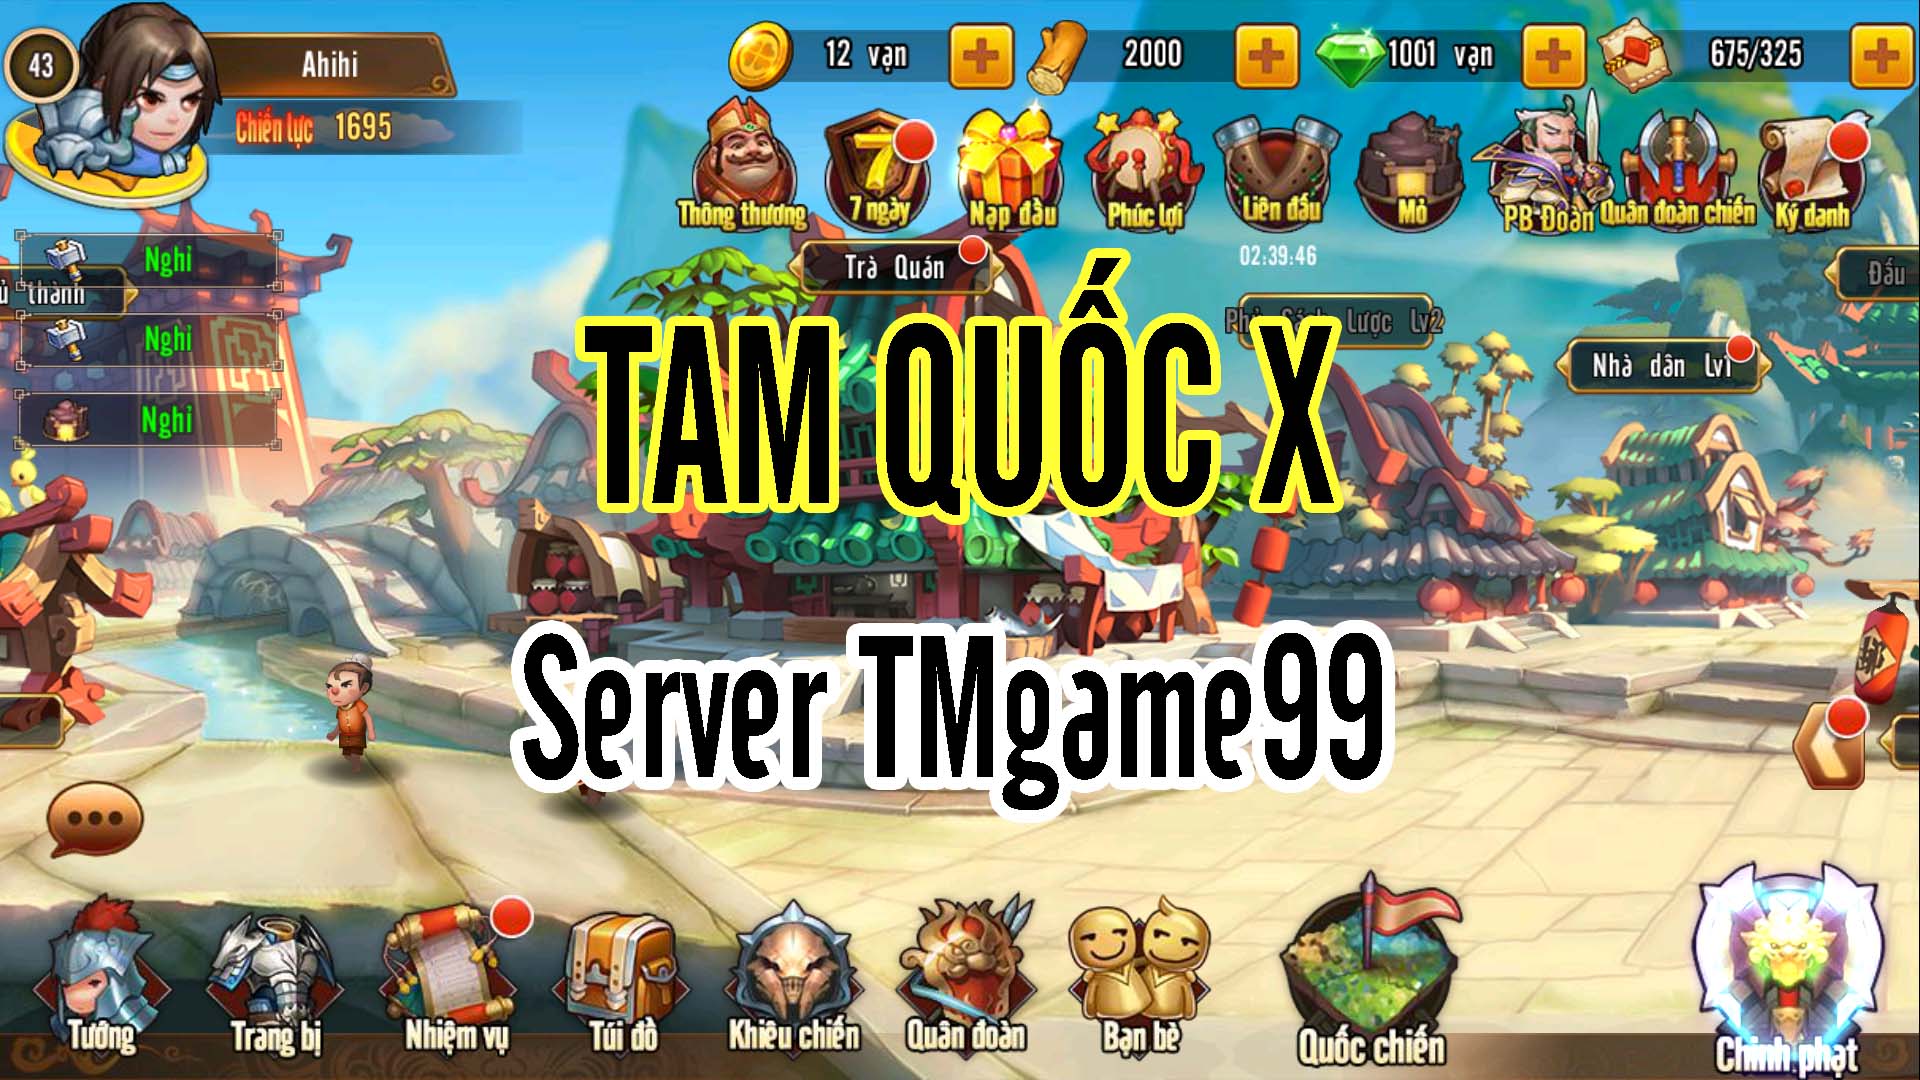 Tmgame99 Tam Quoc X (1)